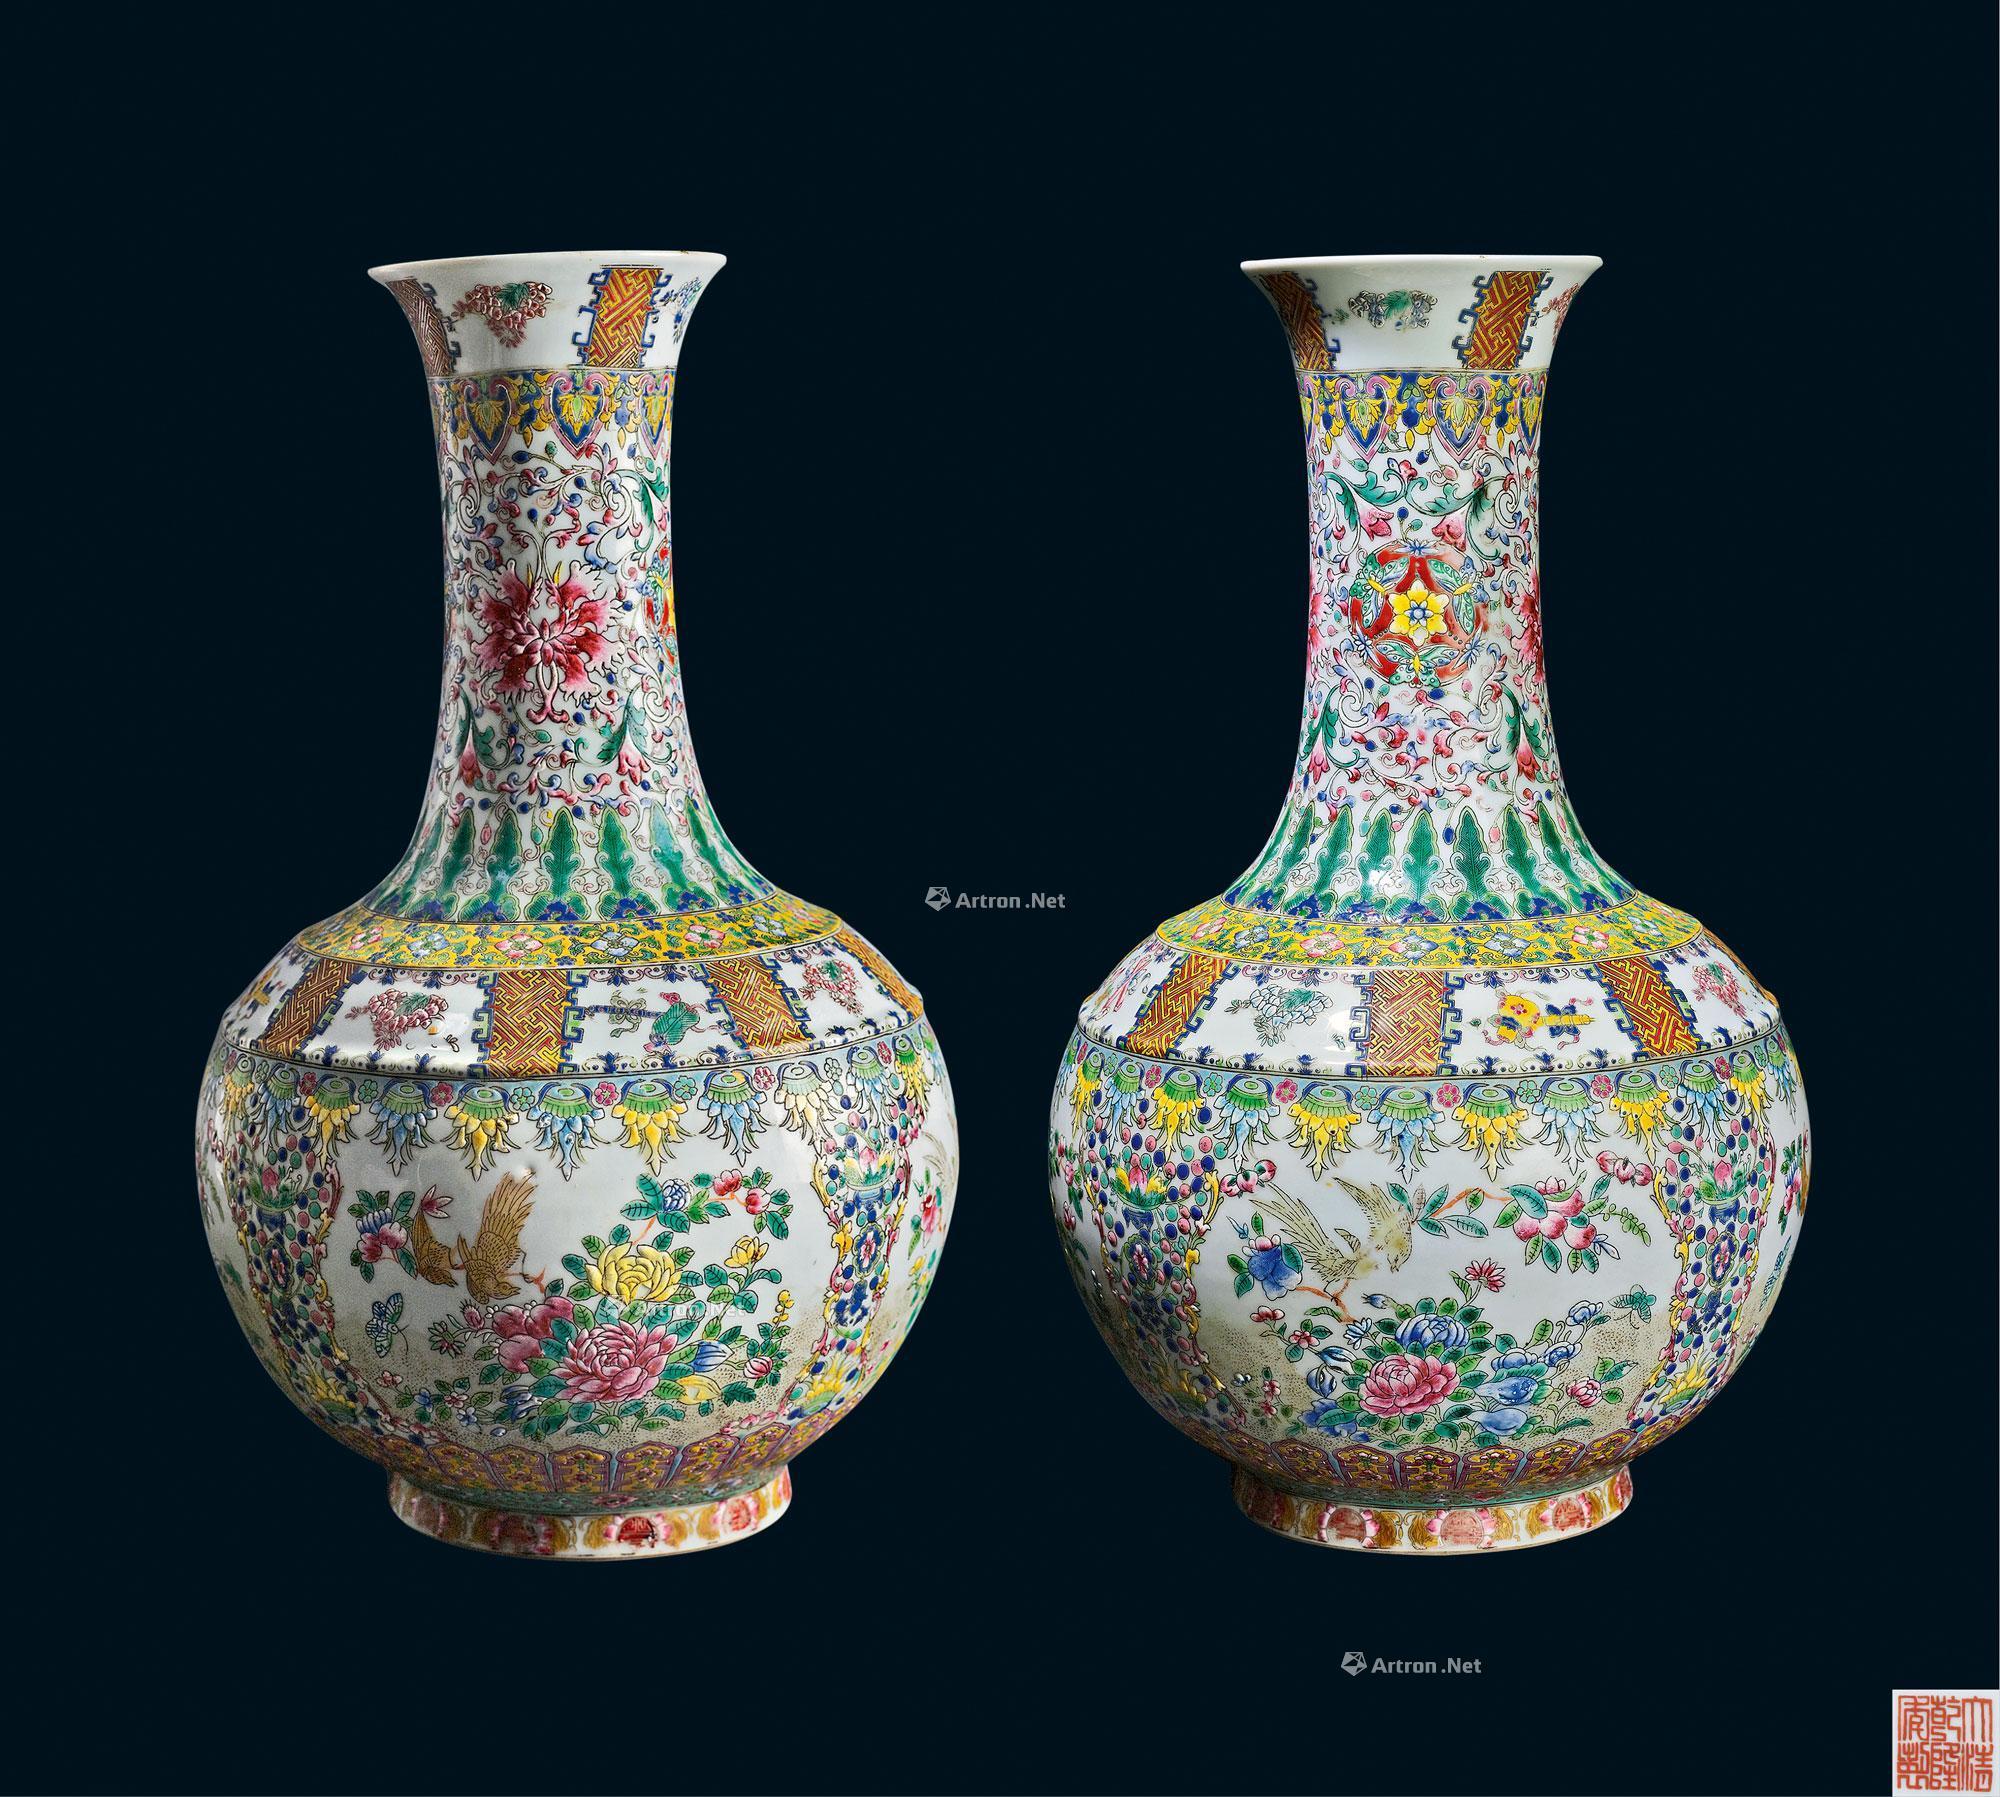 人気商品！！ 景徳鎮製清代黄金竜天球瓶です陶磁器 装飾品 現代工芸品